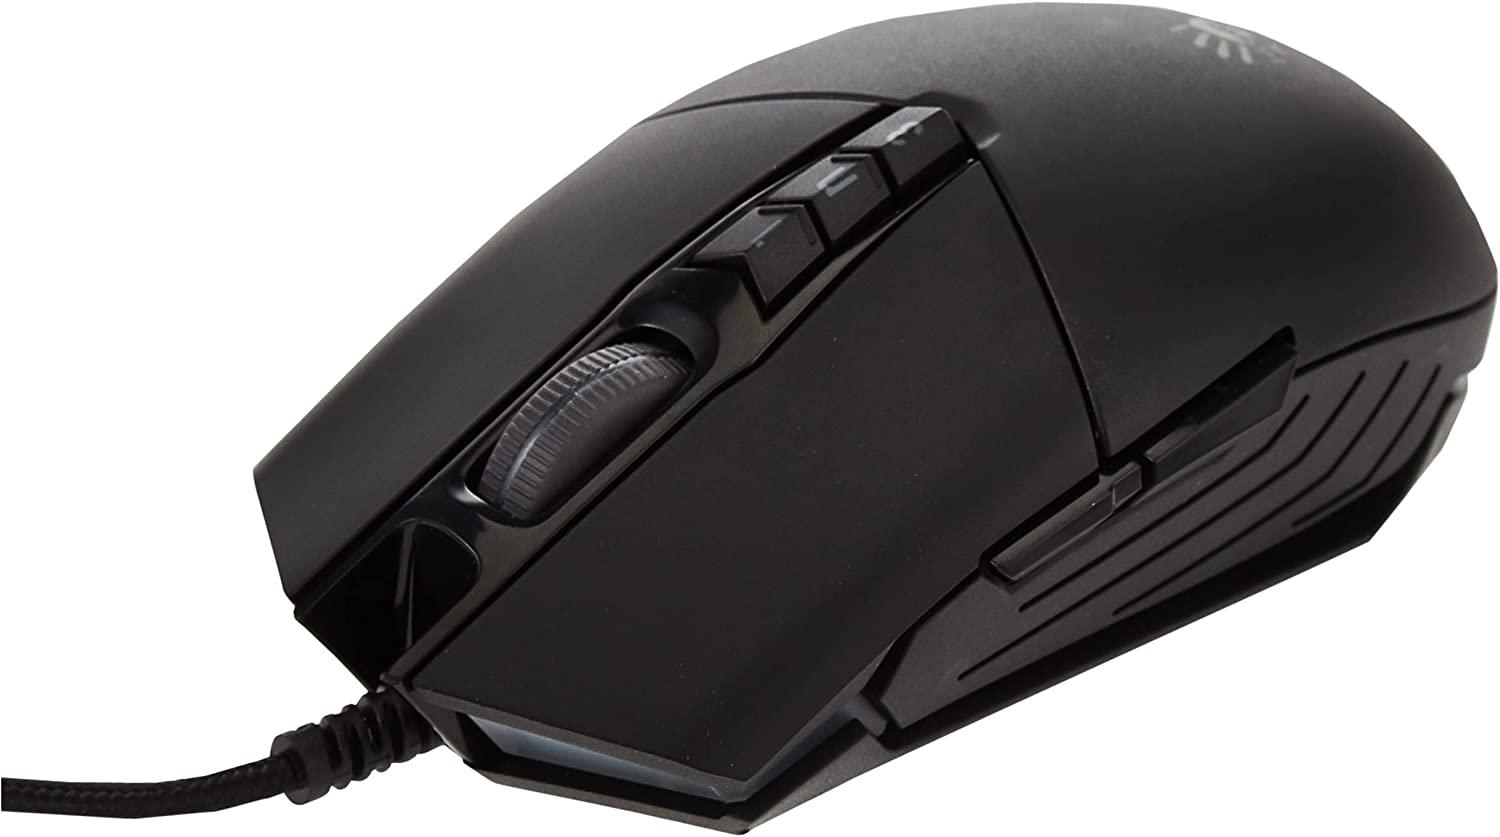 Bloody P91 Pro RGB Gaming mouse - ALARABIYA COMPUTER